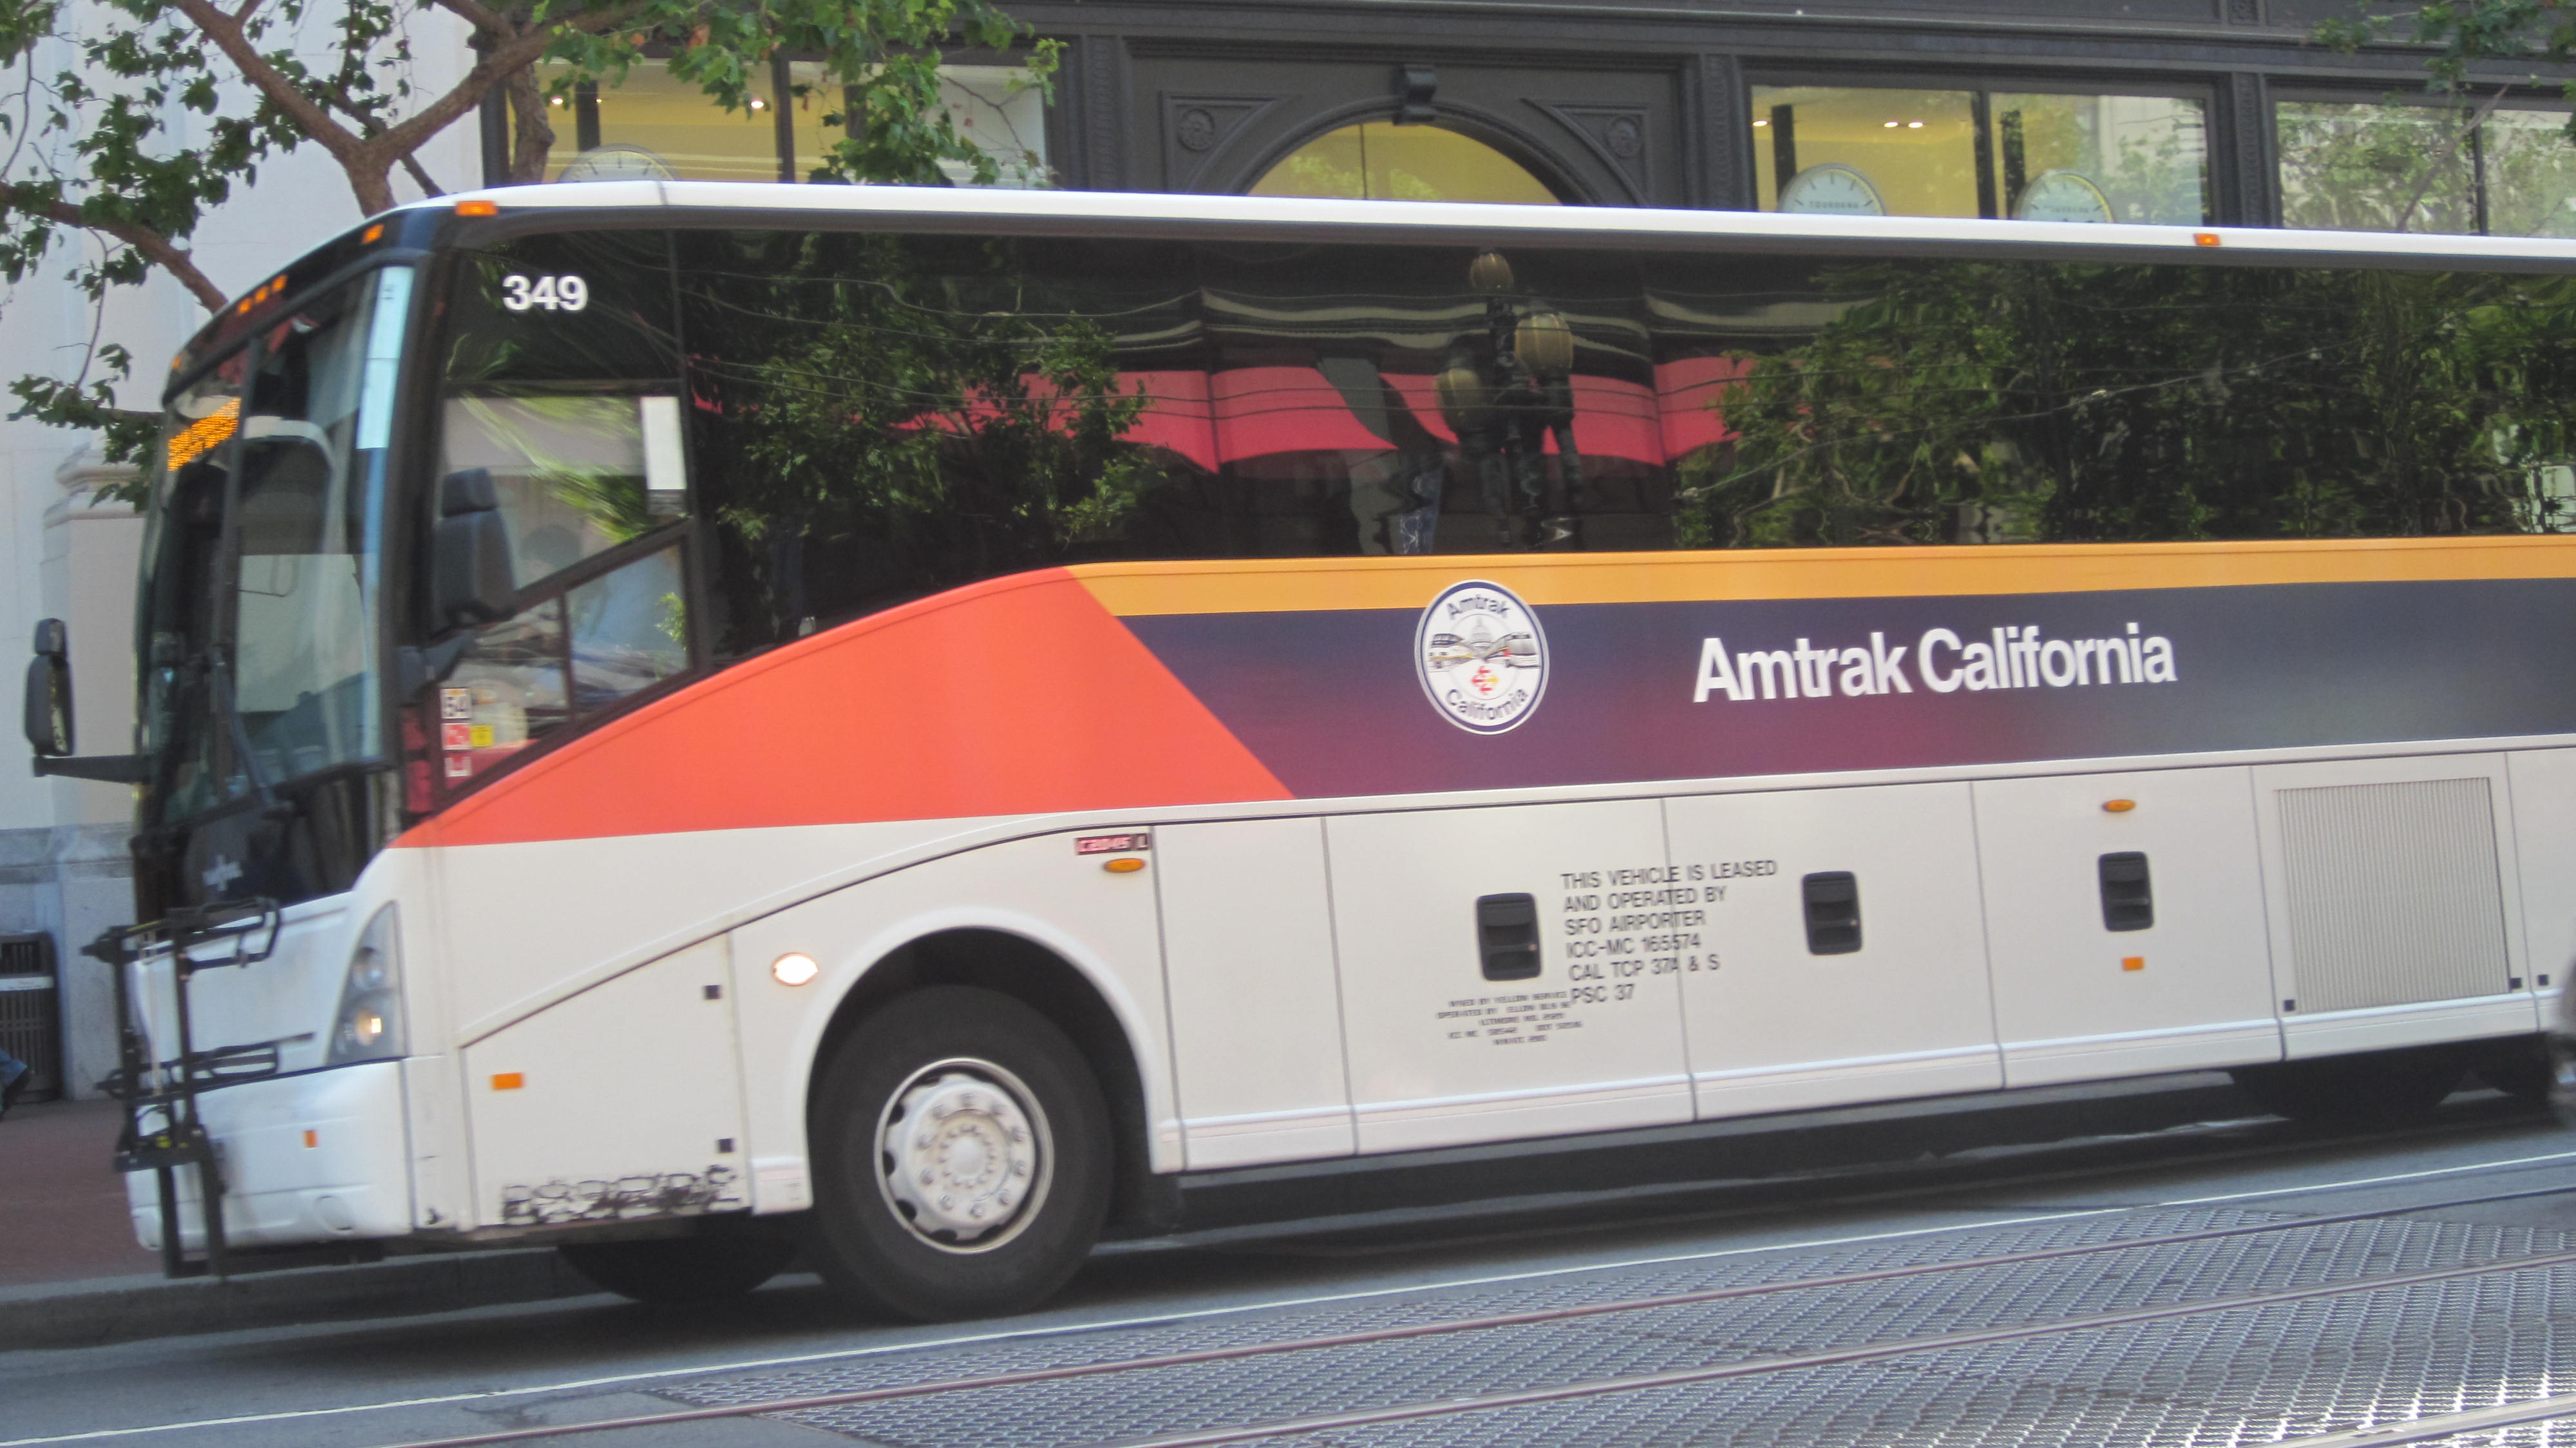 Amtrak_California_bus_no._349.JPG